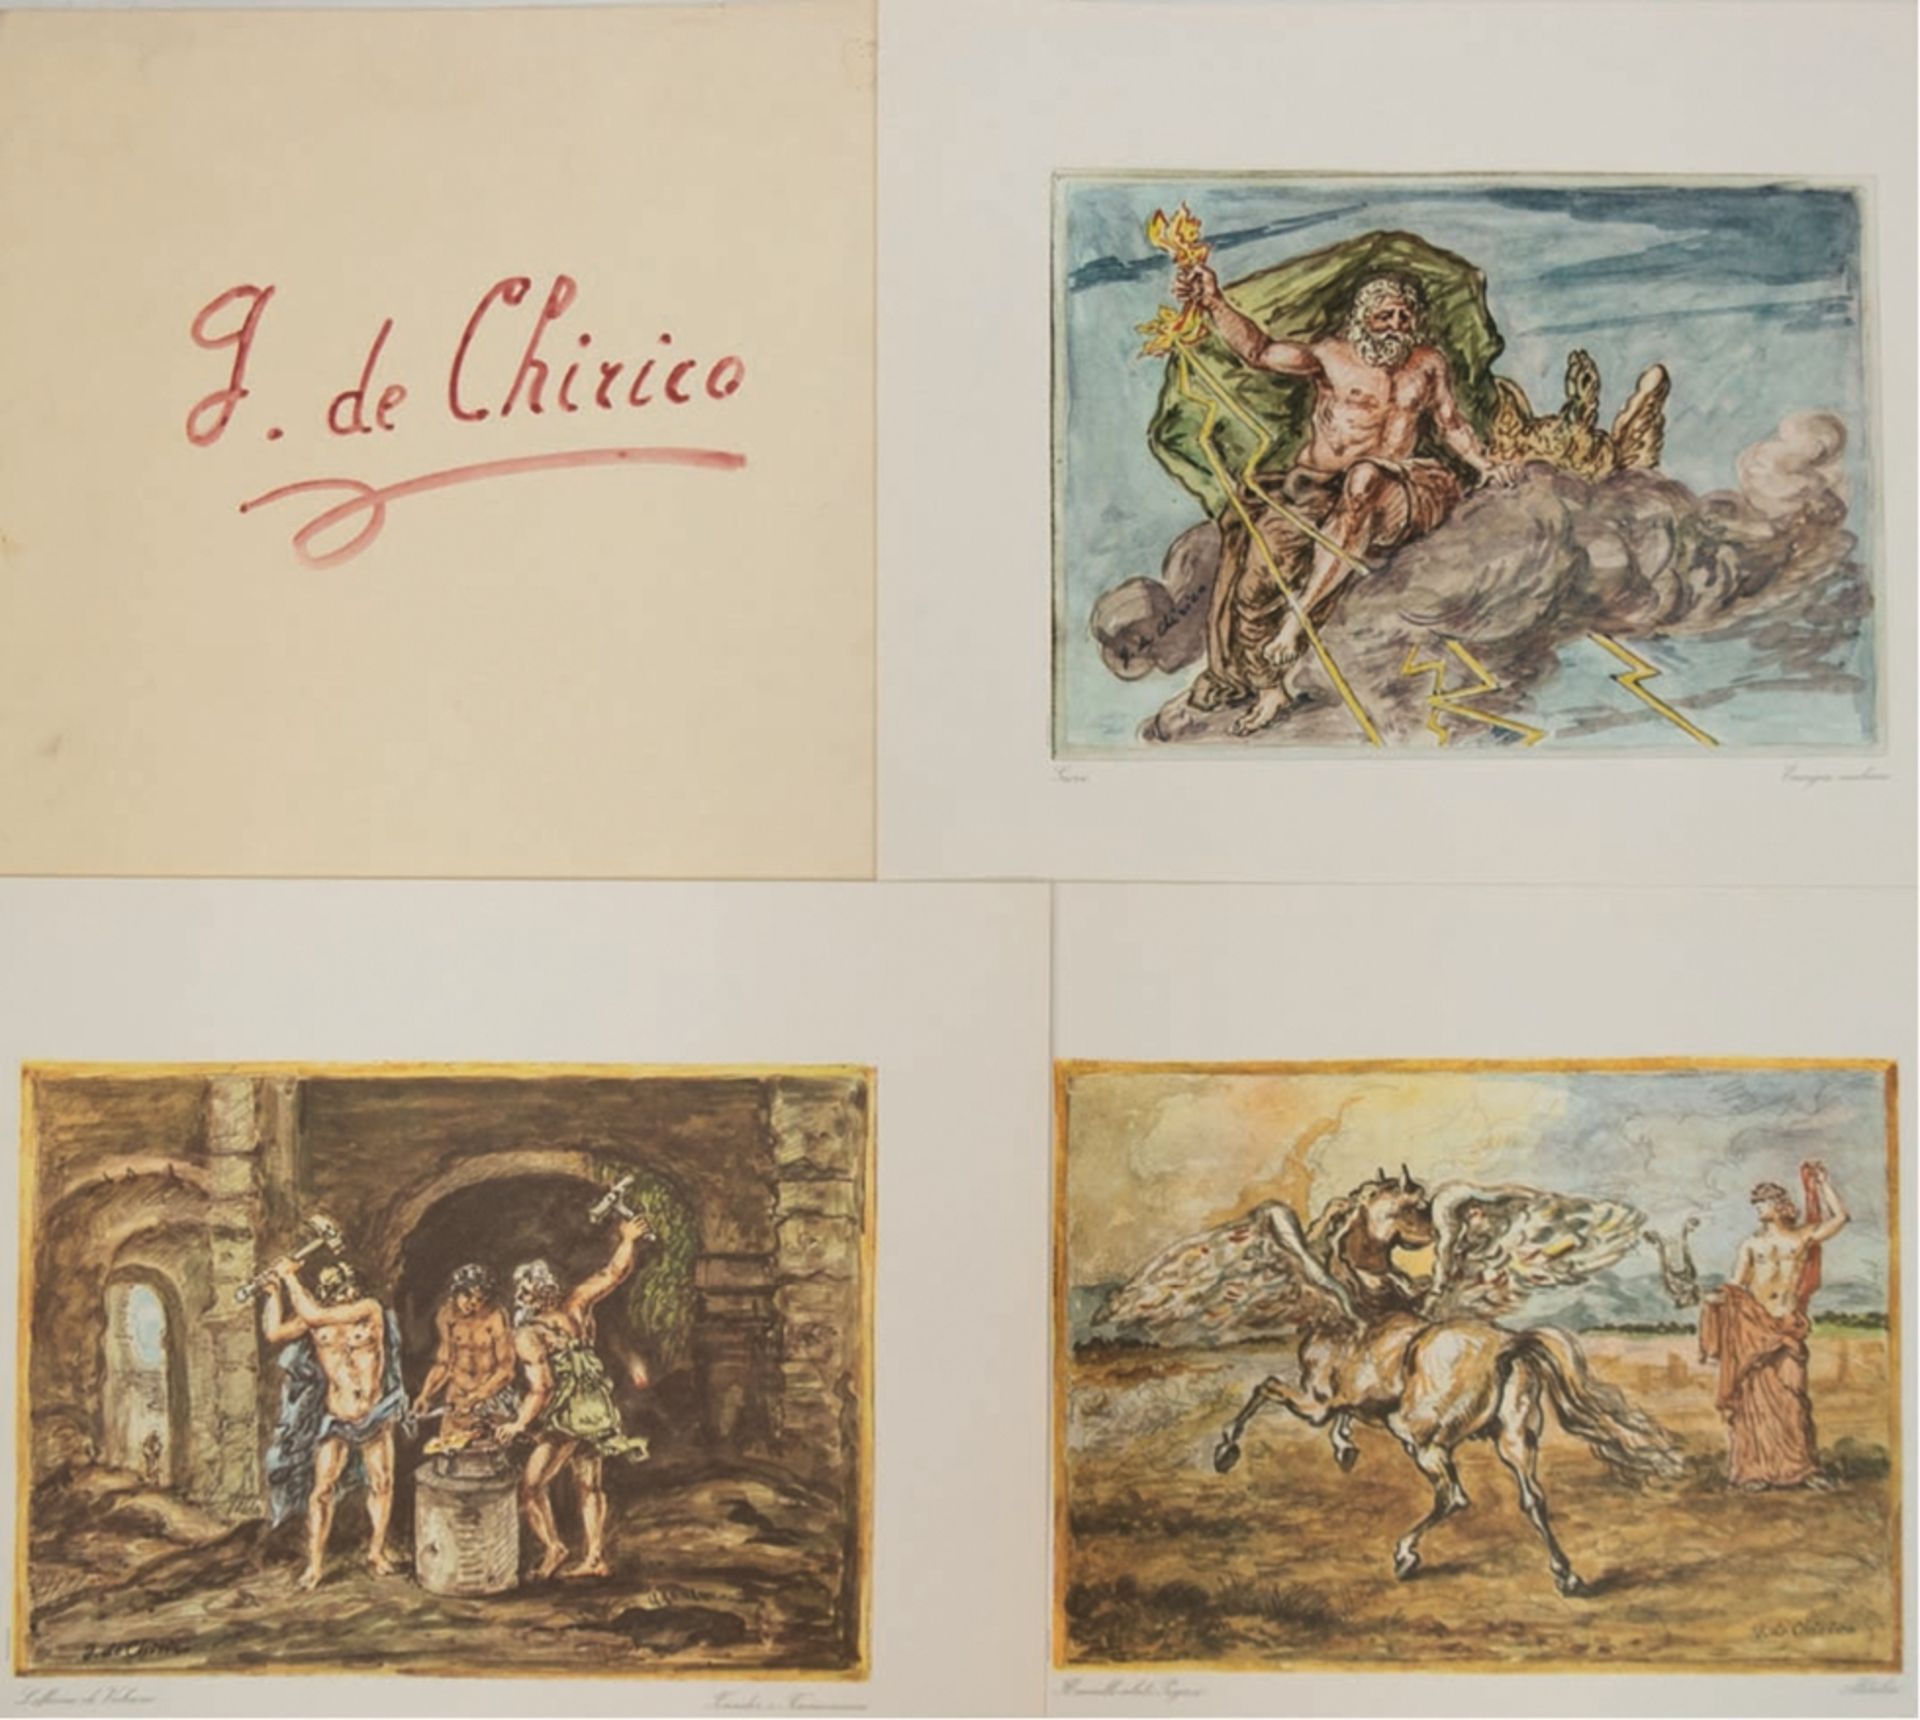 Chirico, Georigio de (1888-1978) Mappe "Dieci tavole dedicate all'IRI", 10 Drucken des Künstlers, I